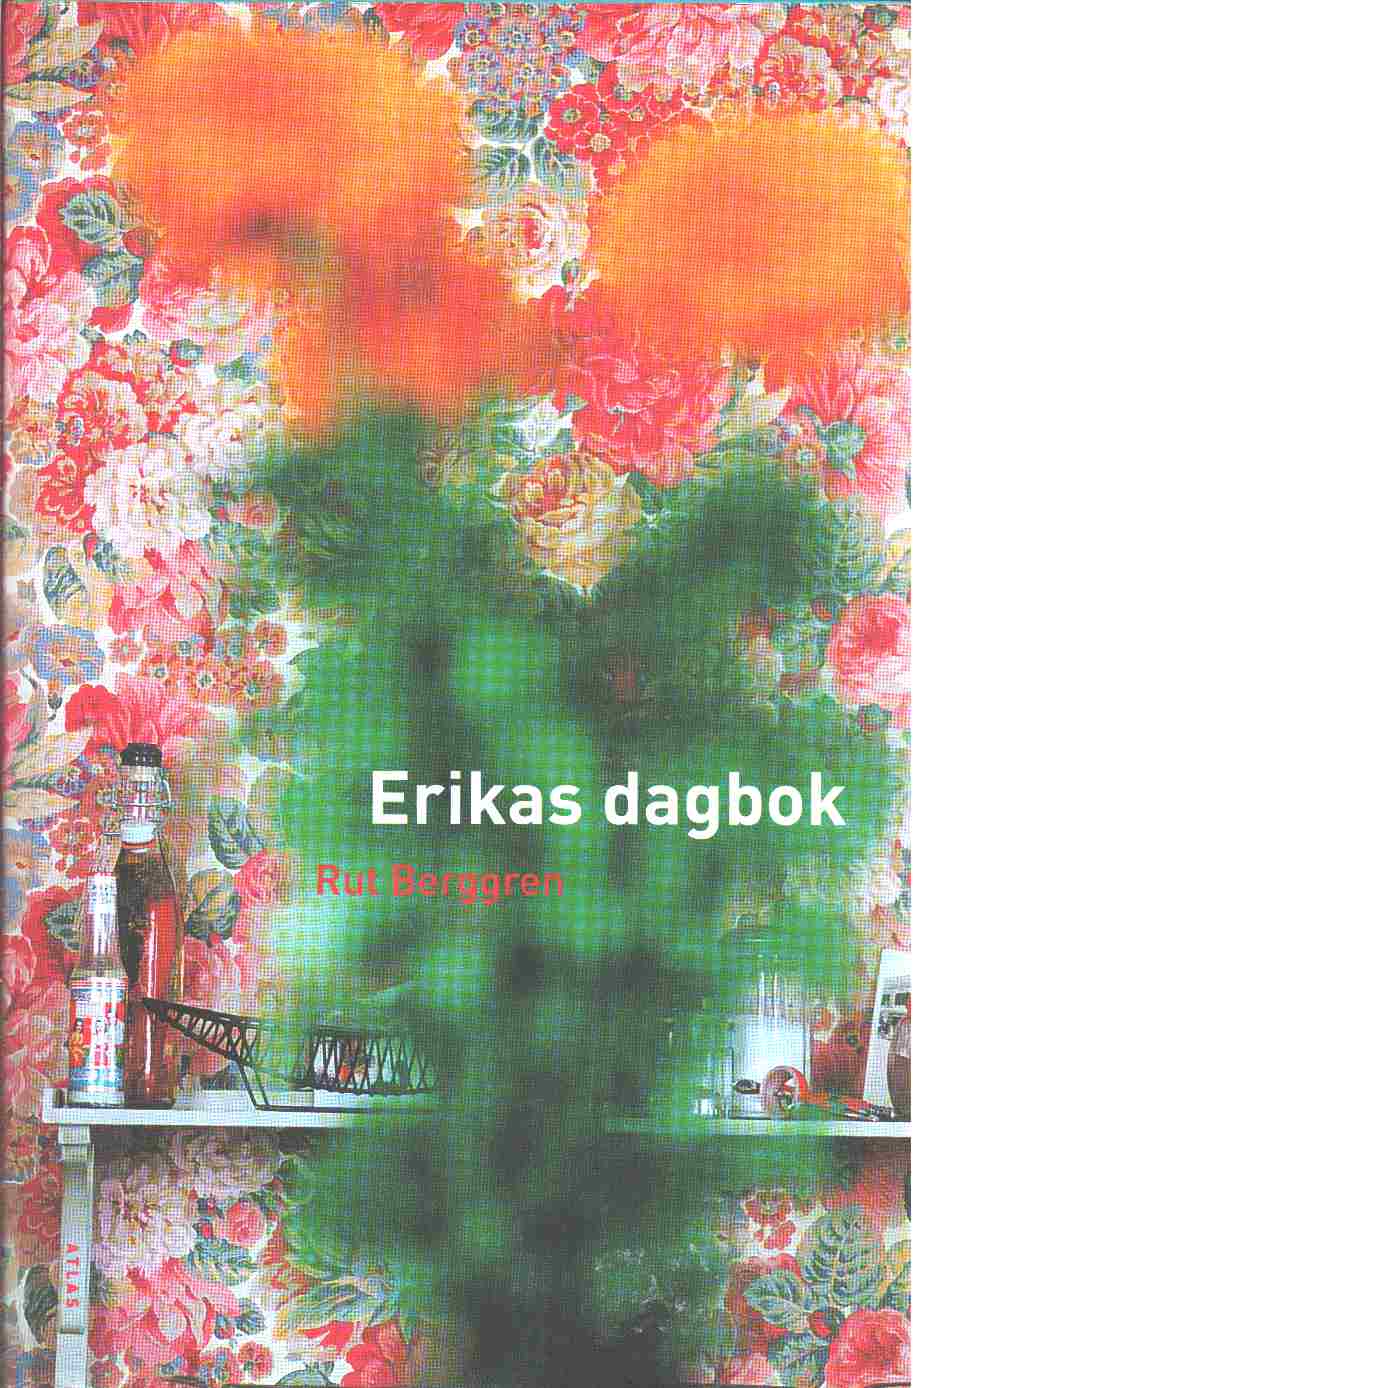 Erikas dagbok - Berggren, Rut